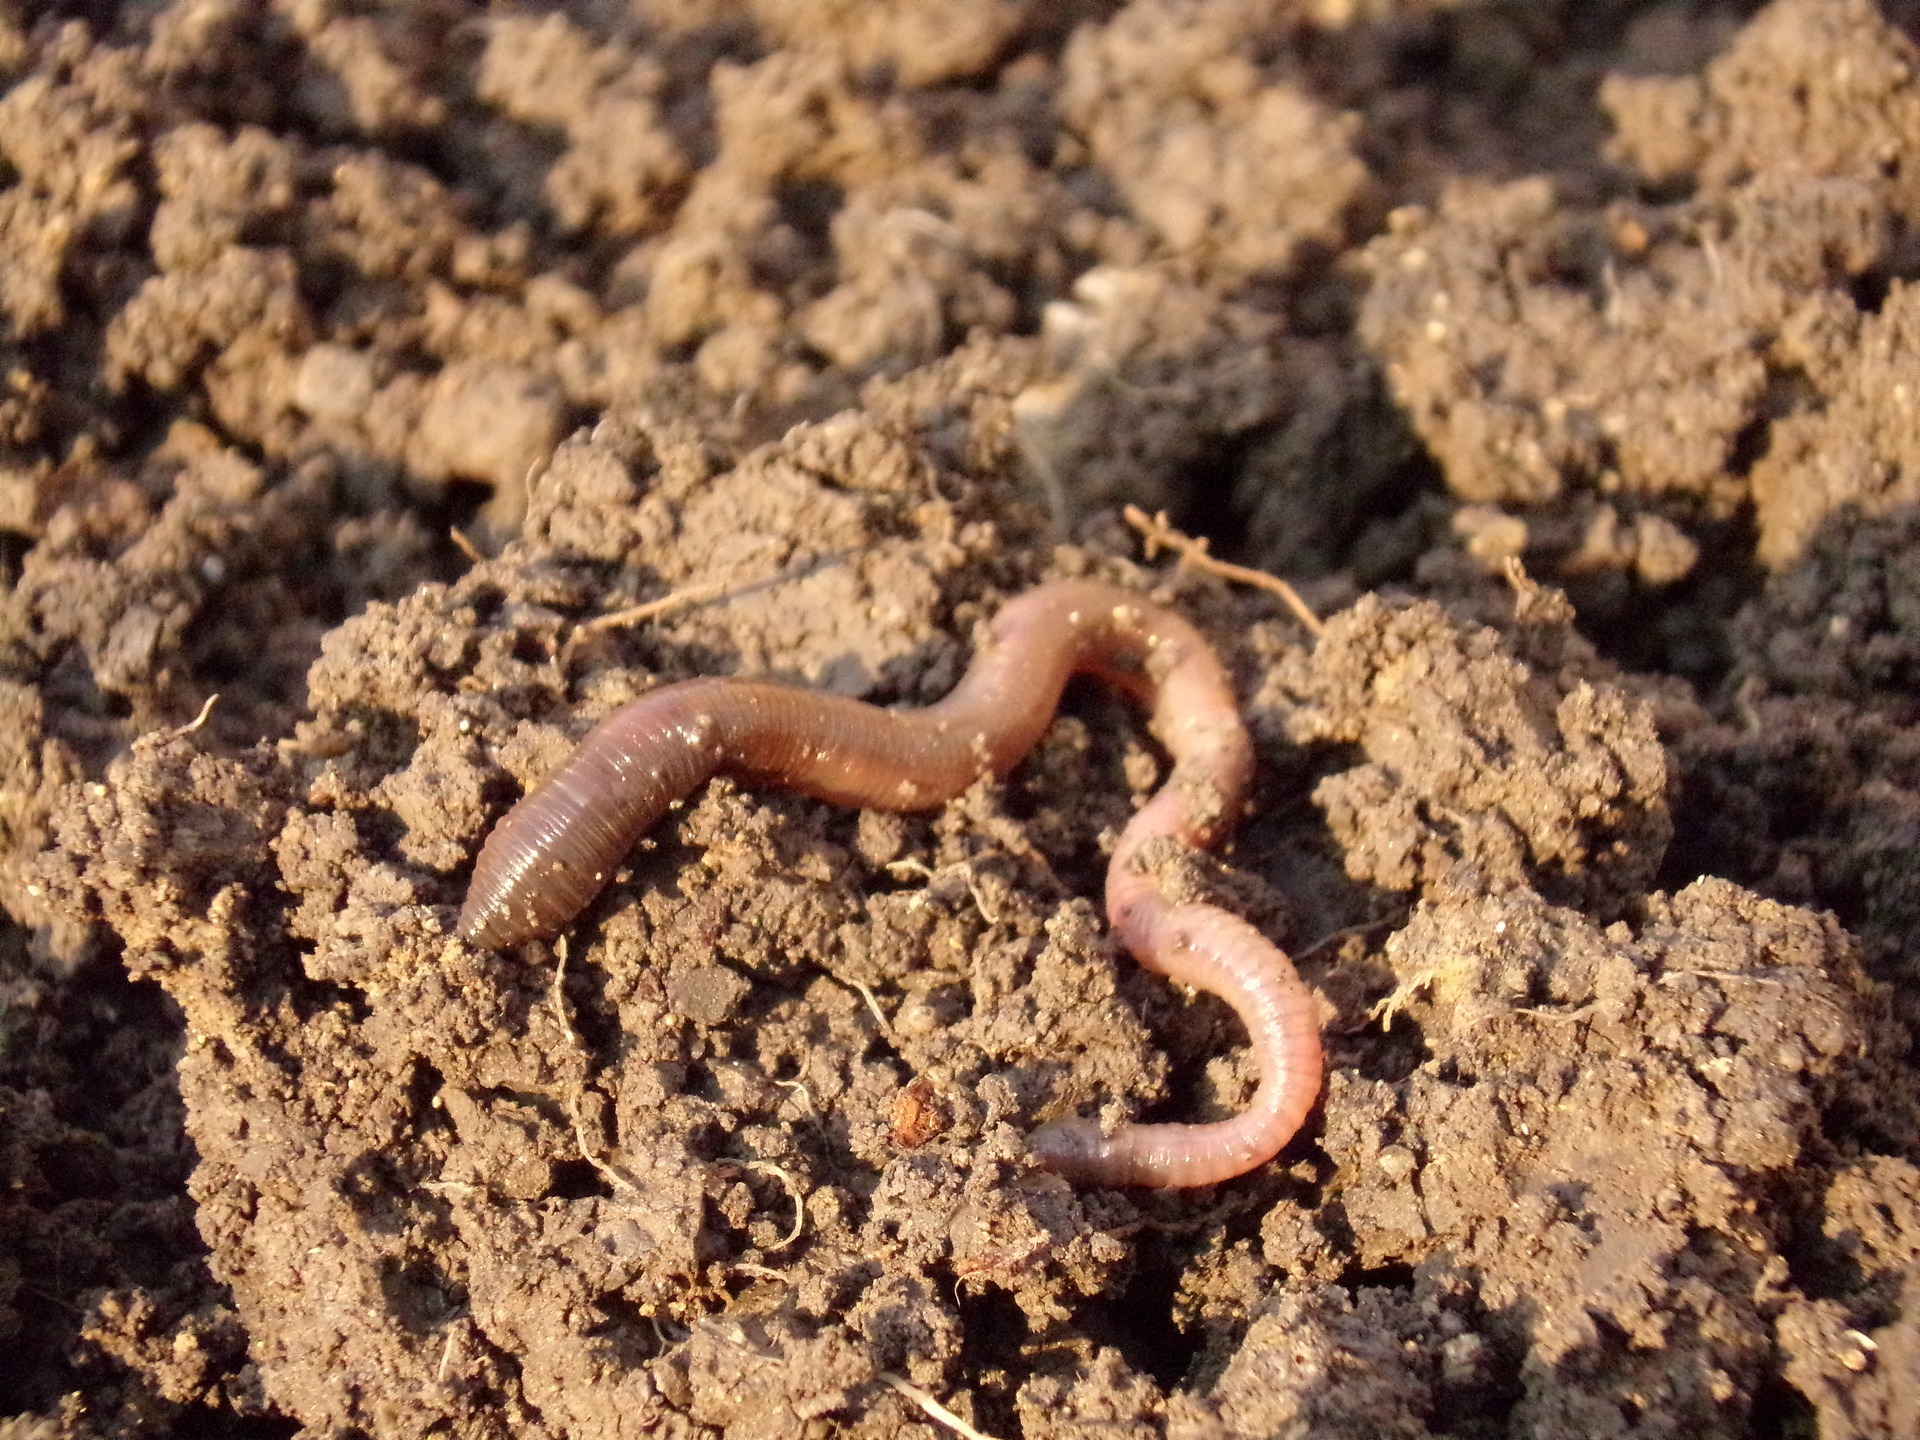 earthworm-686593_1920.jpg